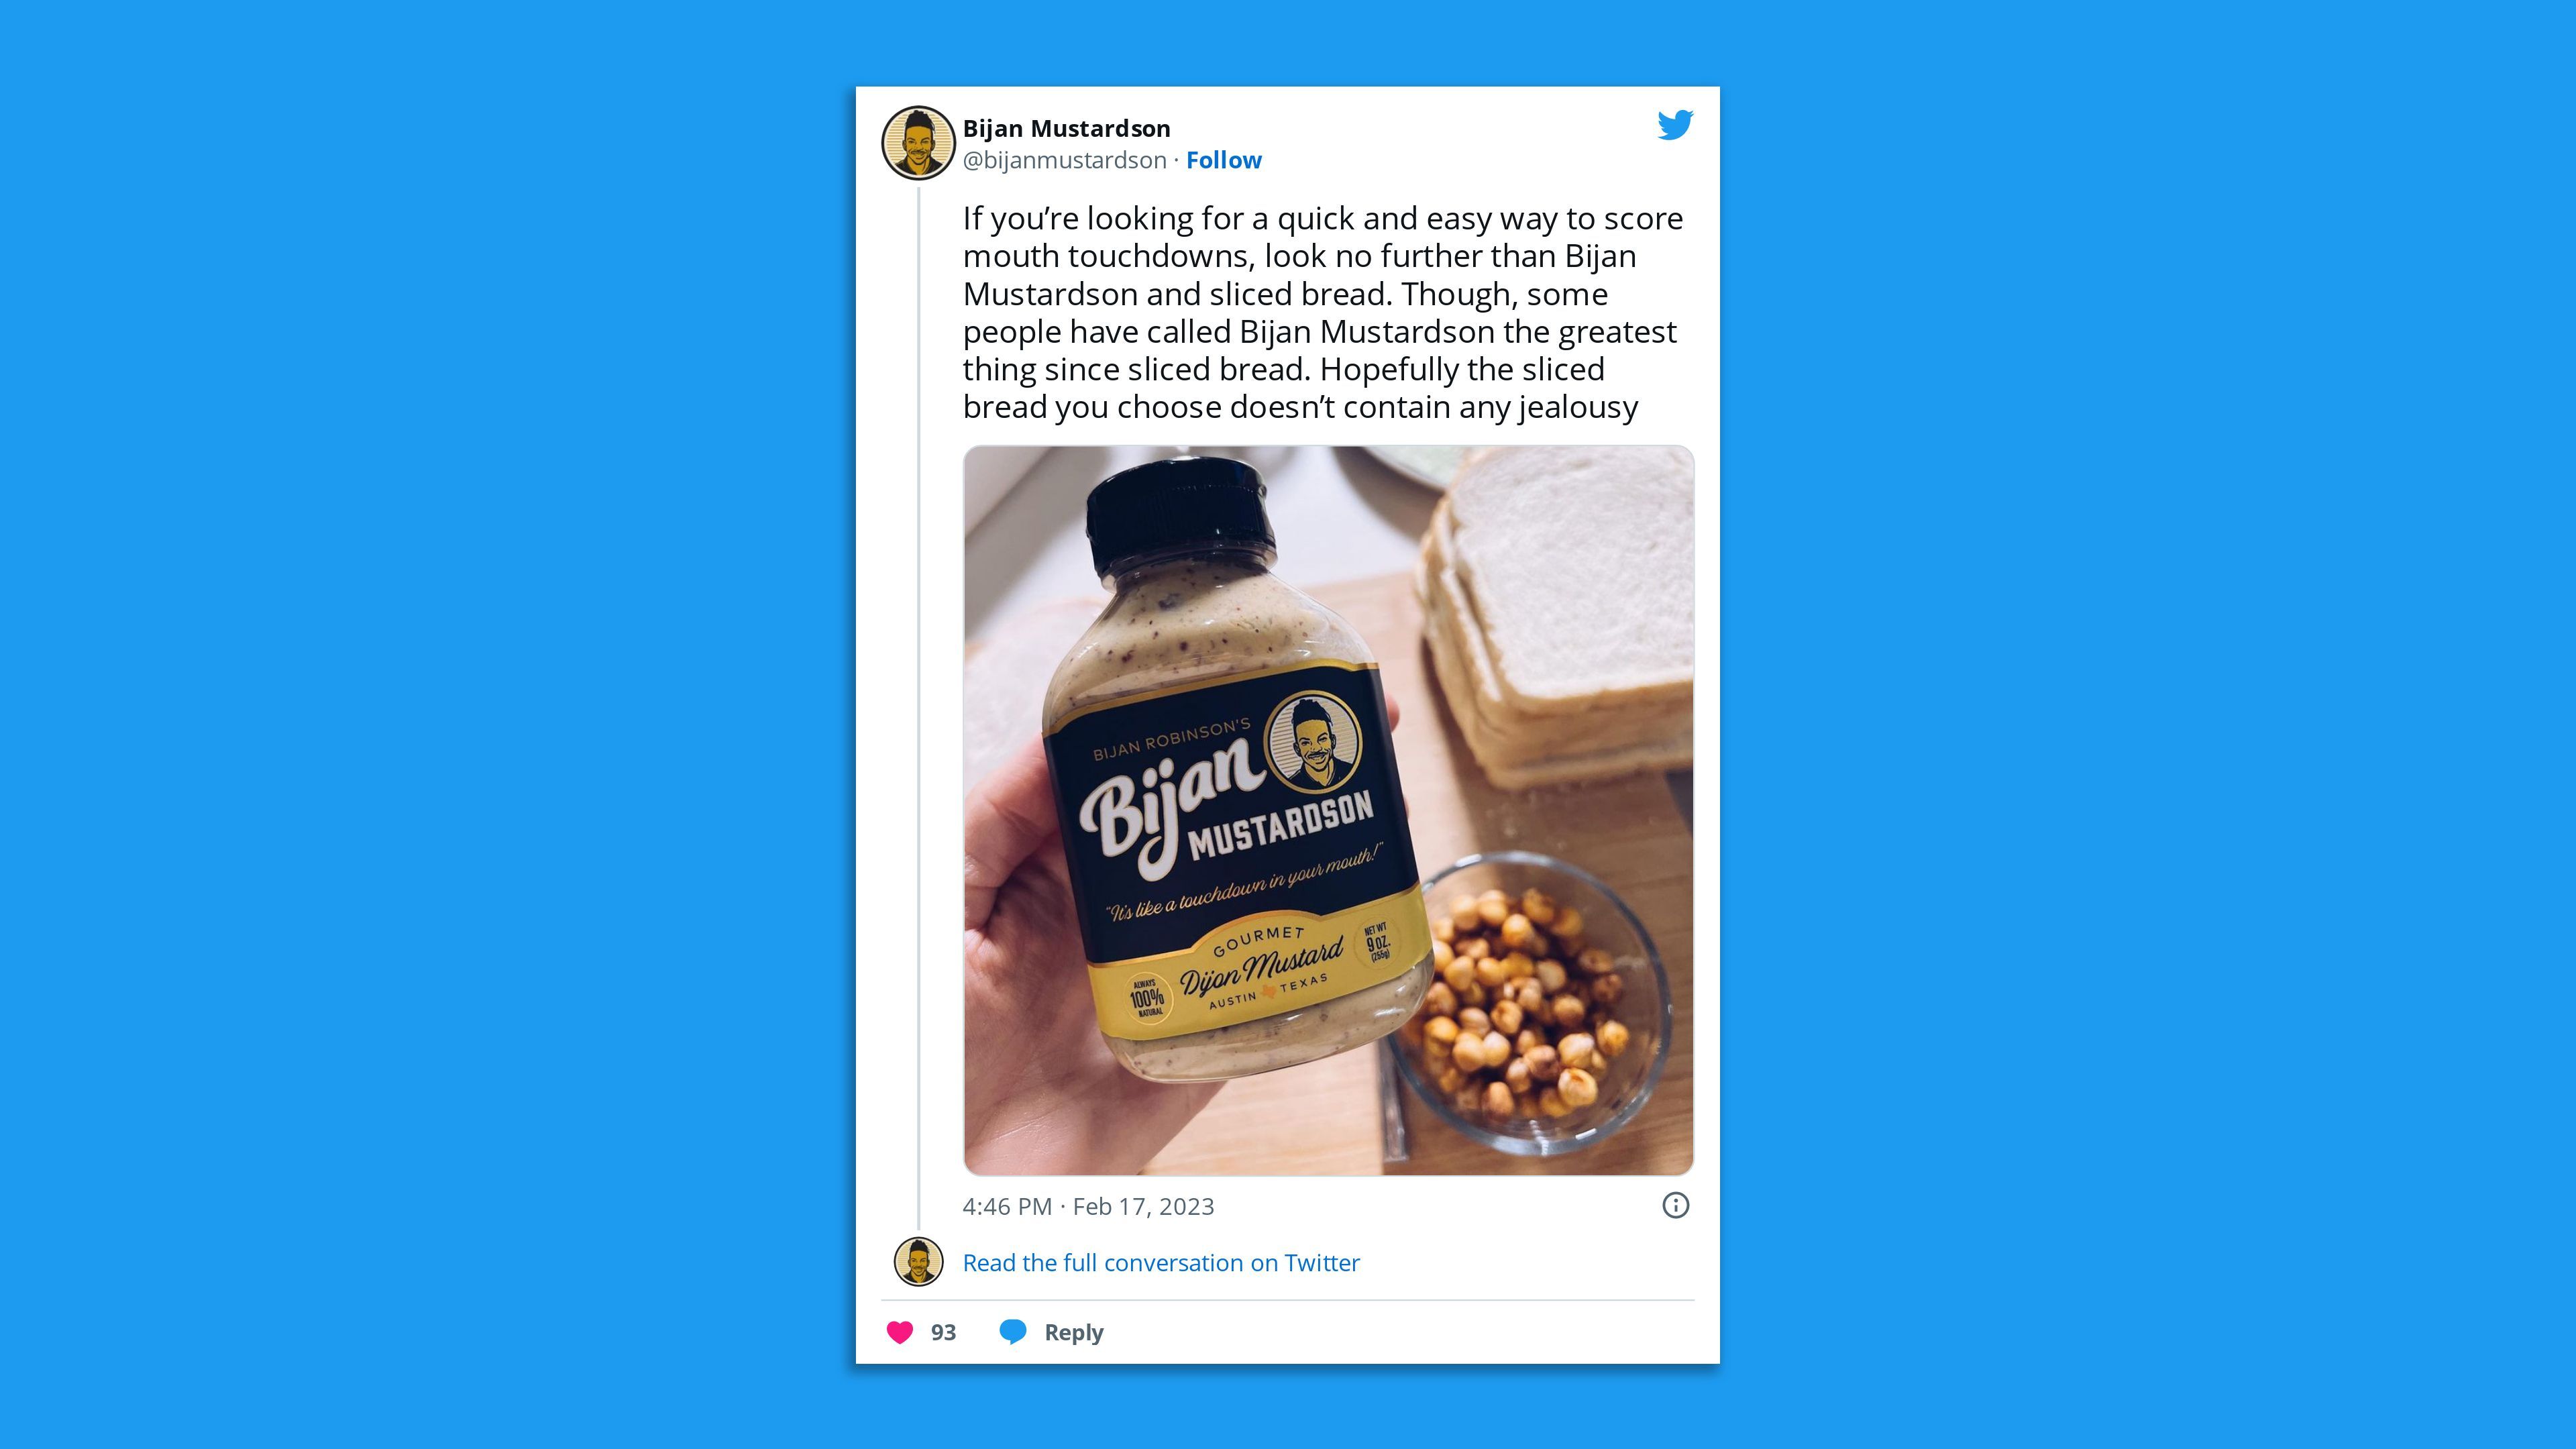 A twitter screenshot promoting a mustard brand.